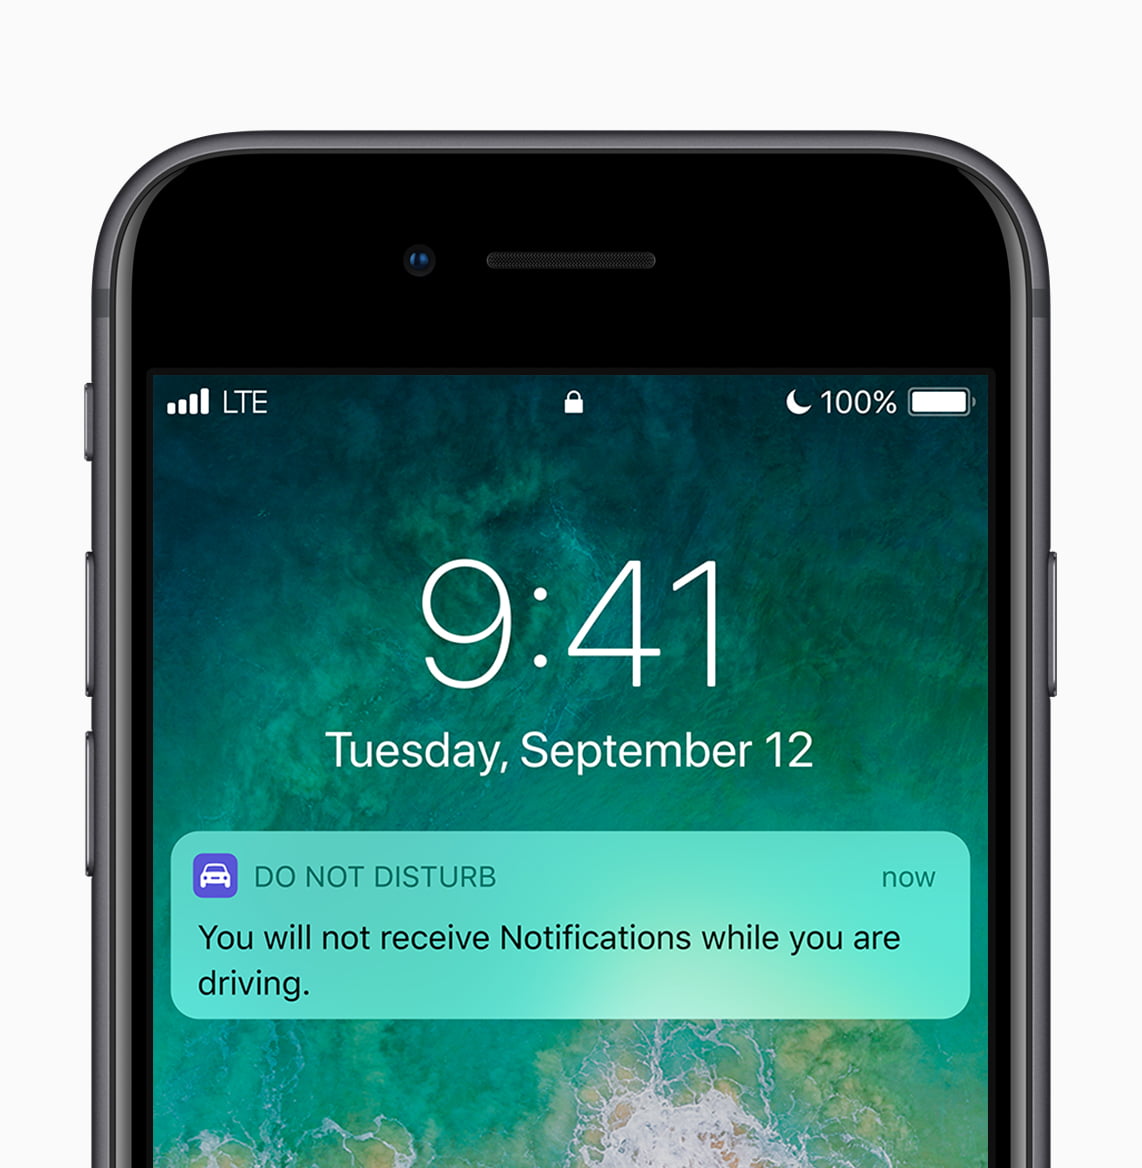 iOS 11 Update Probleme: Kamera/Touchscreen geht nicht mehr